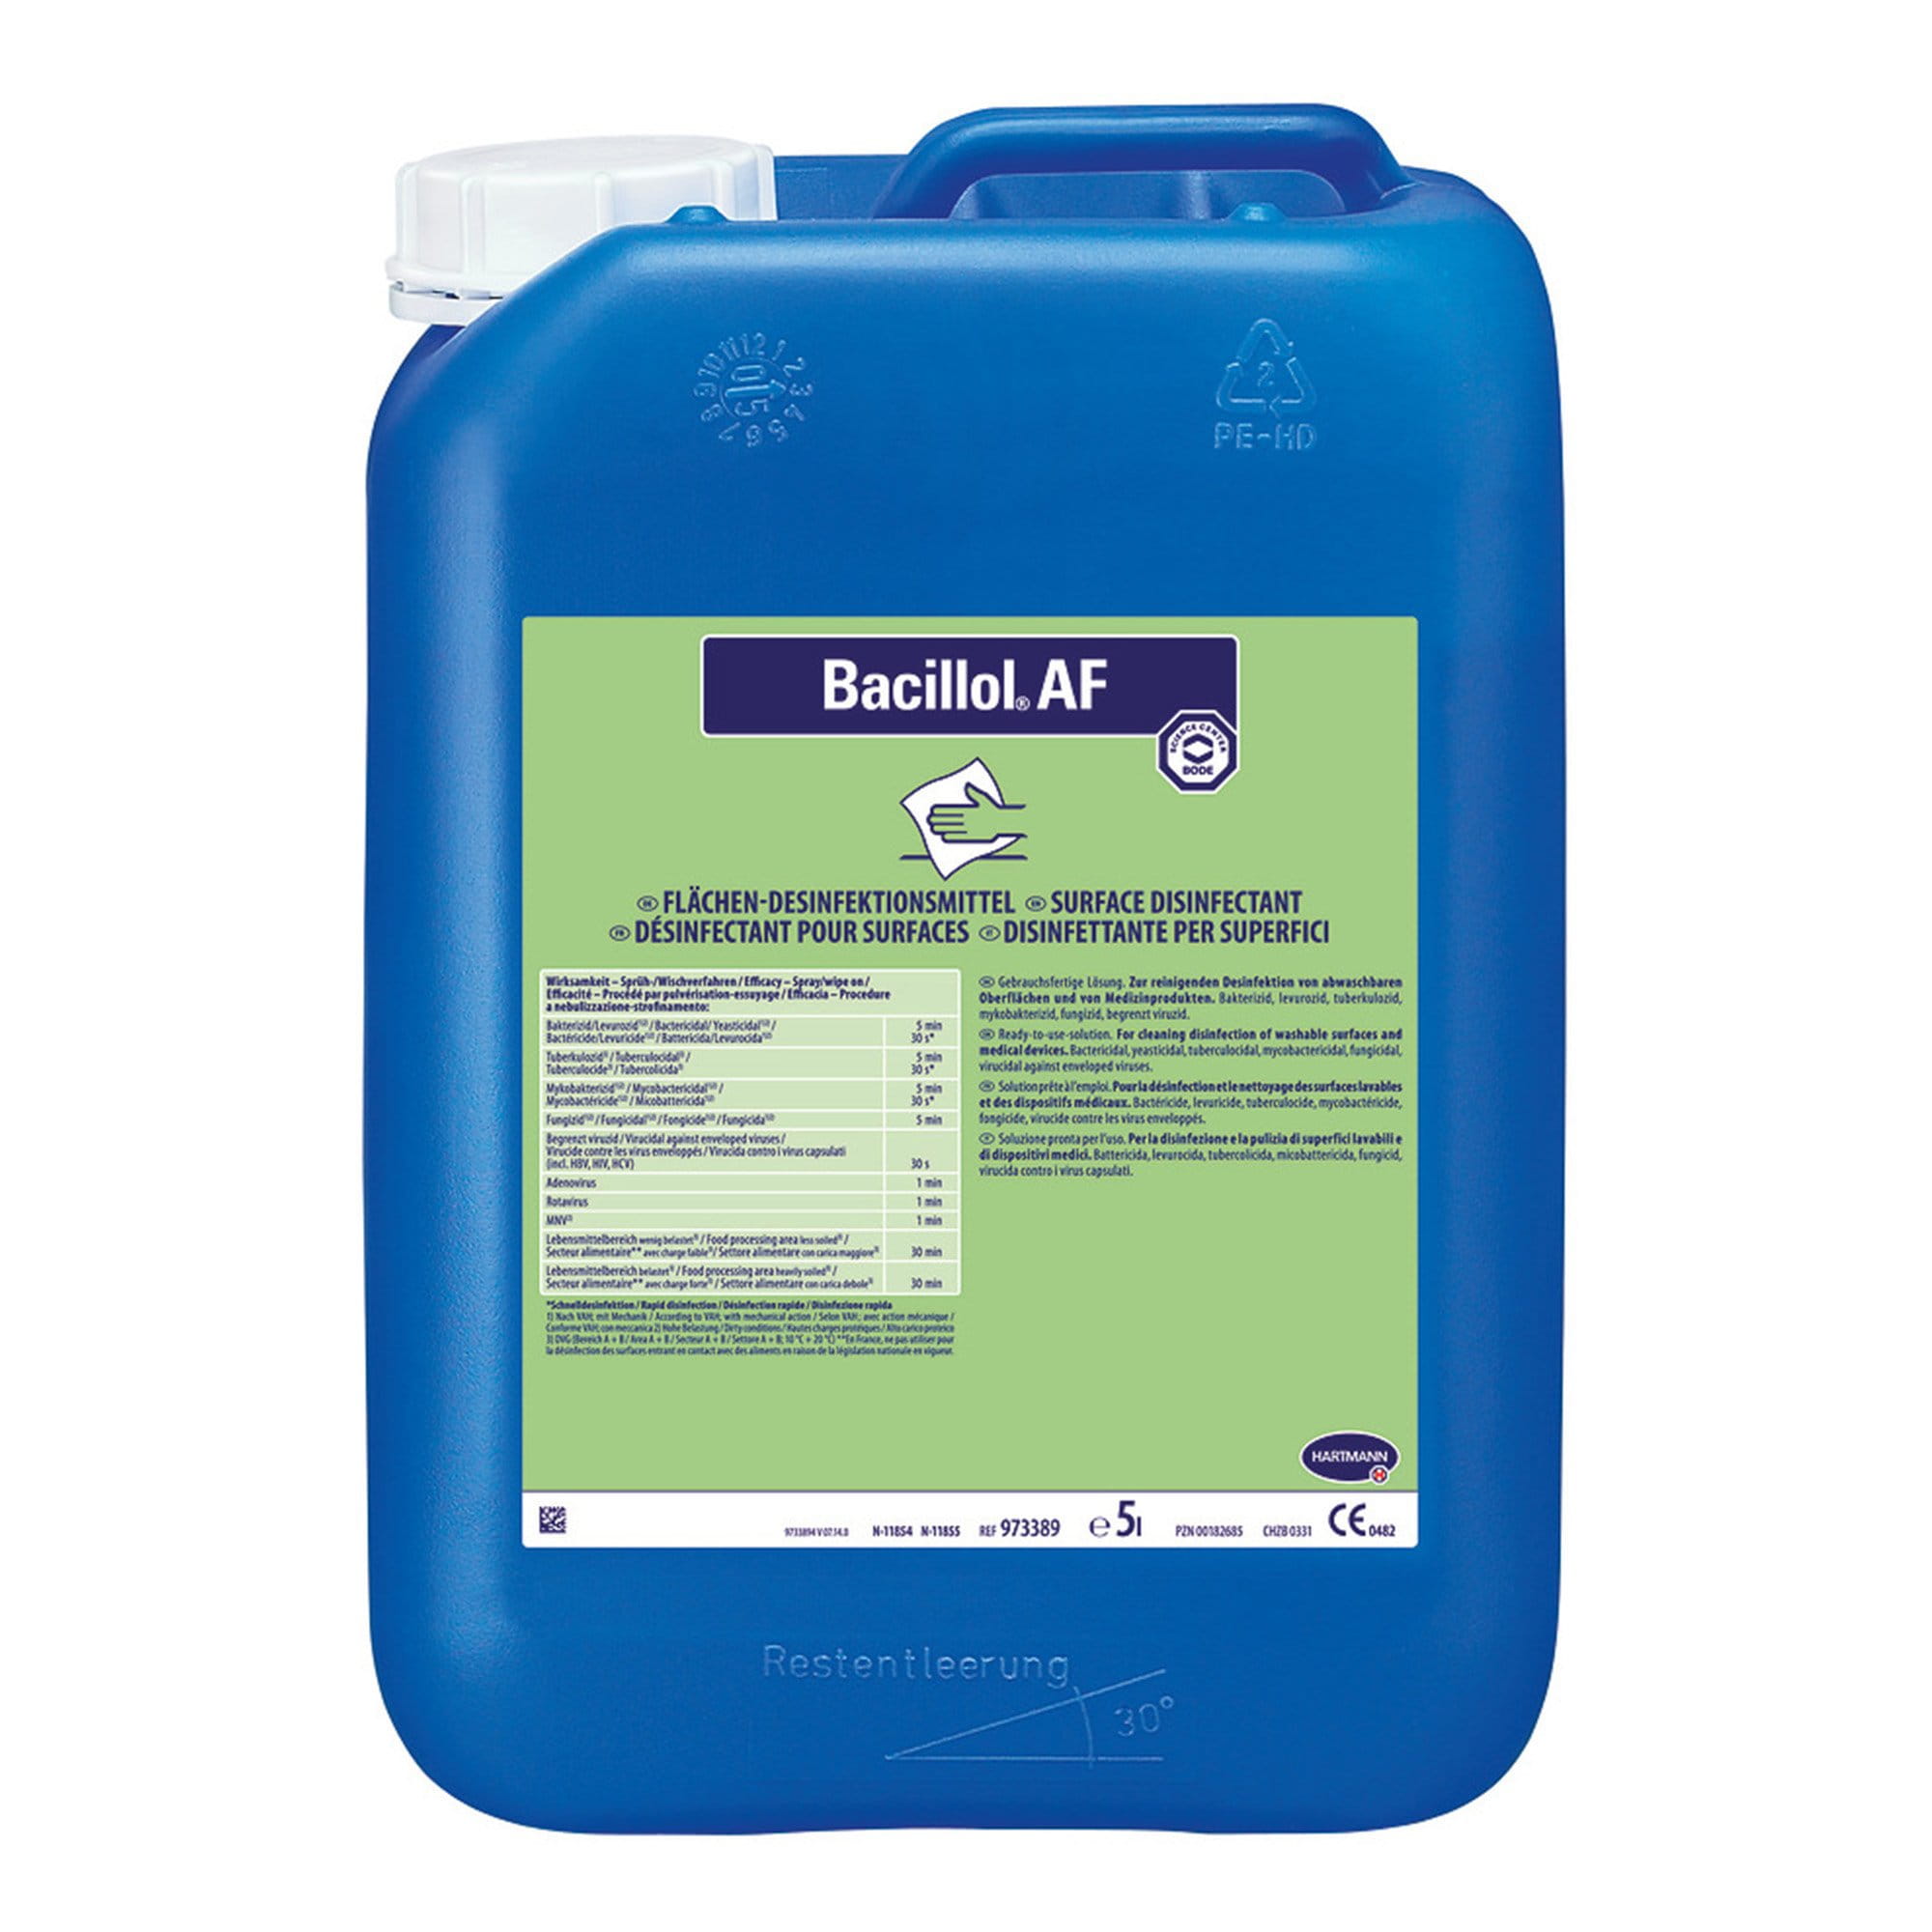 Bode Bacillol AF alkoholisches Schnell-Desinfektionsmittel 5 Liter Kanister 973389_1